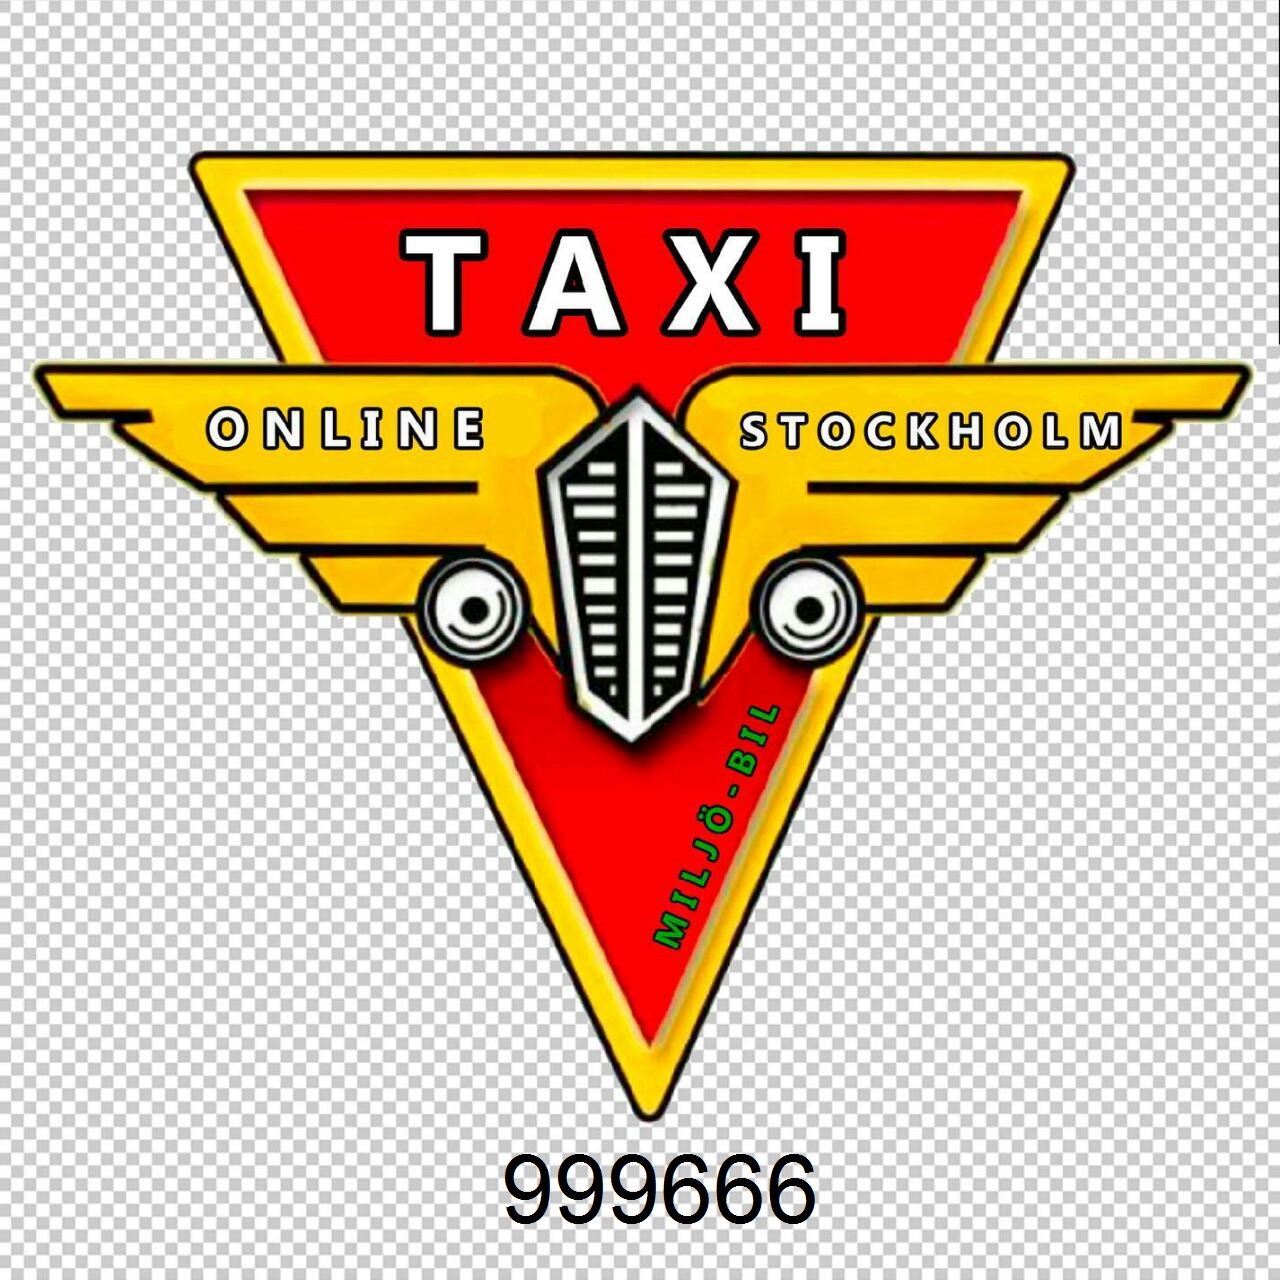 Taxi Online Stockholm Miljö-Bil 999666